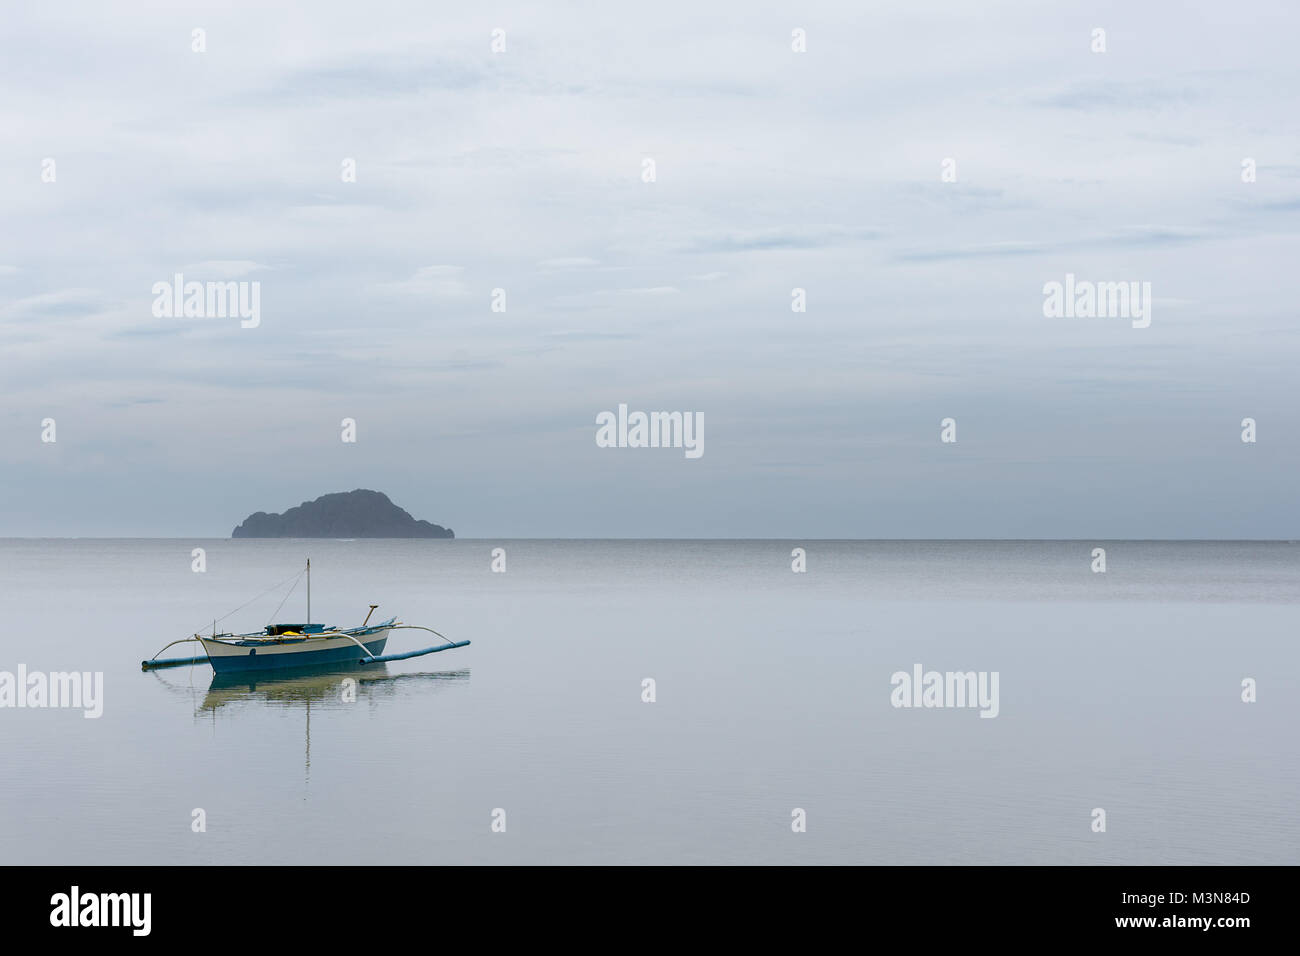 Bateaux de pêcheurs philippins avec stabilisateurs traditionnelle flottent encore ancrée dans une mer calme de Coron Bay, Palawan, Philippines. Banque D'Images